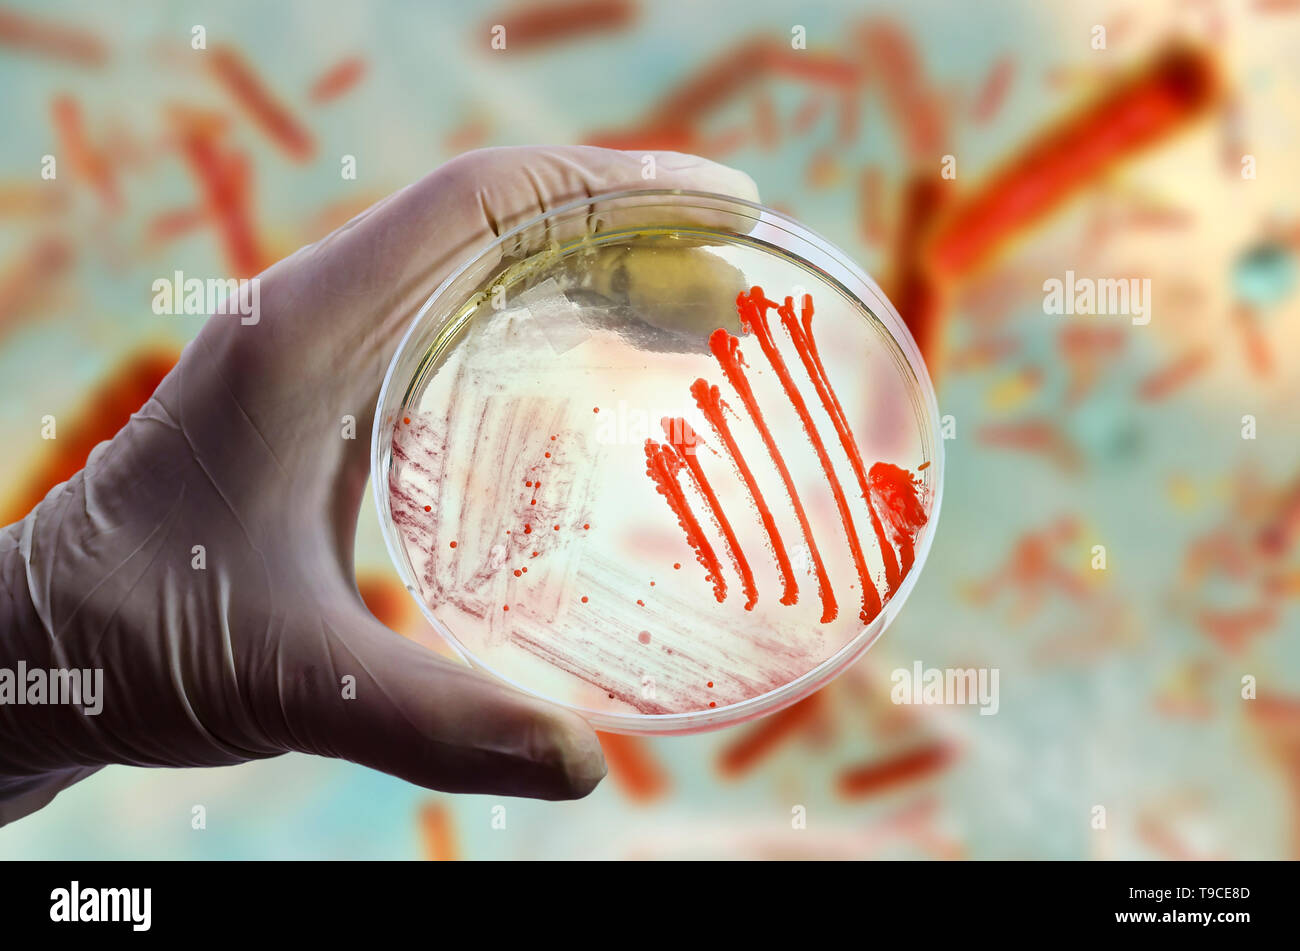 Les cultures bactériennes et fongiques, image composite Banque D'Images